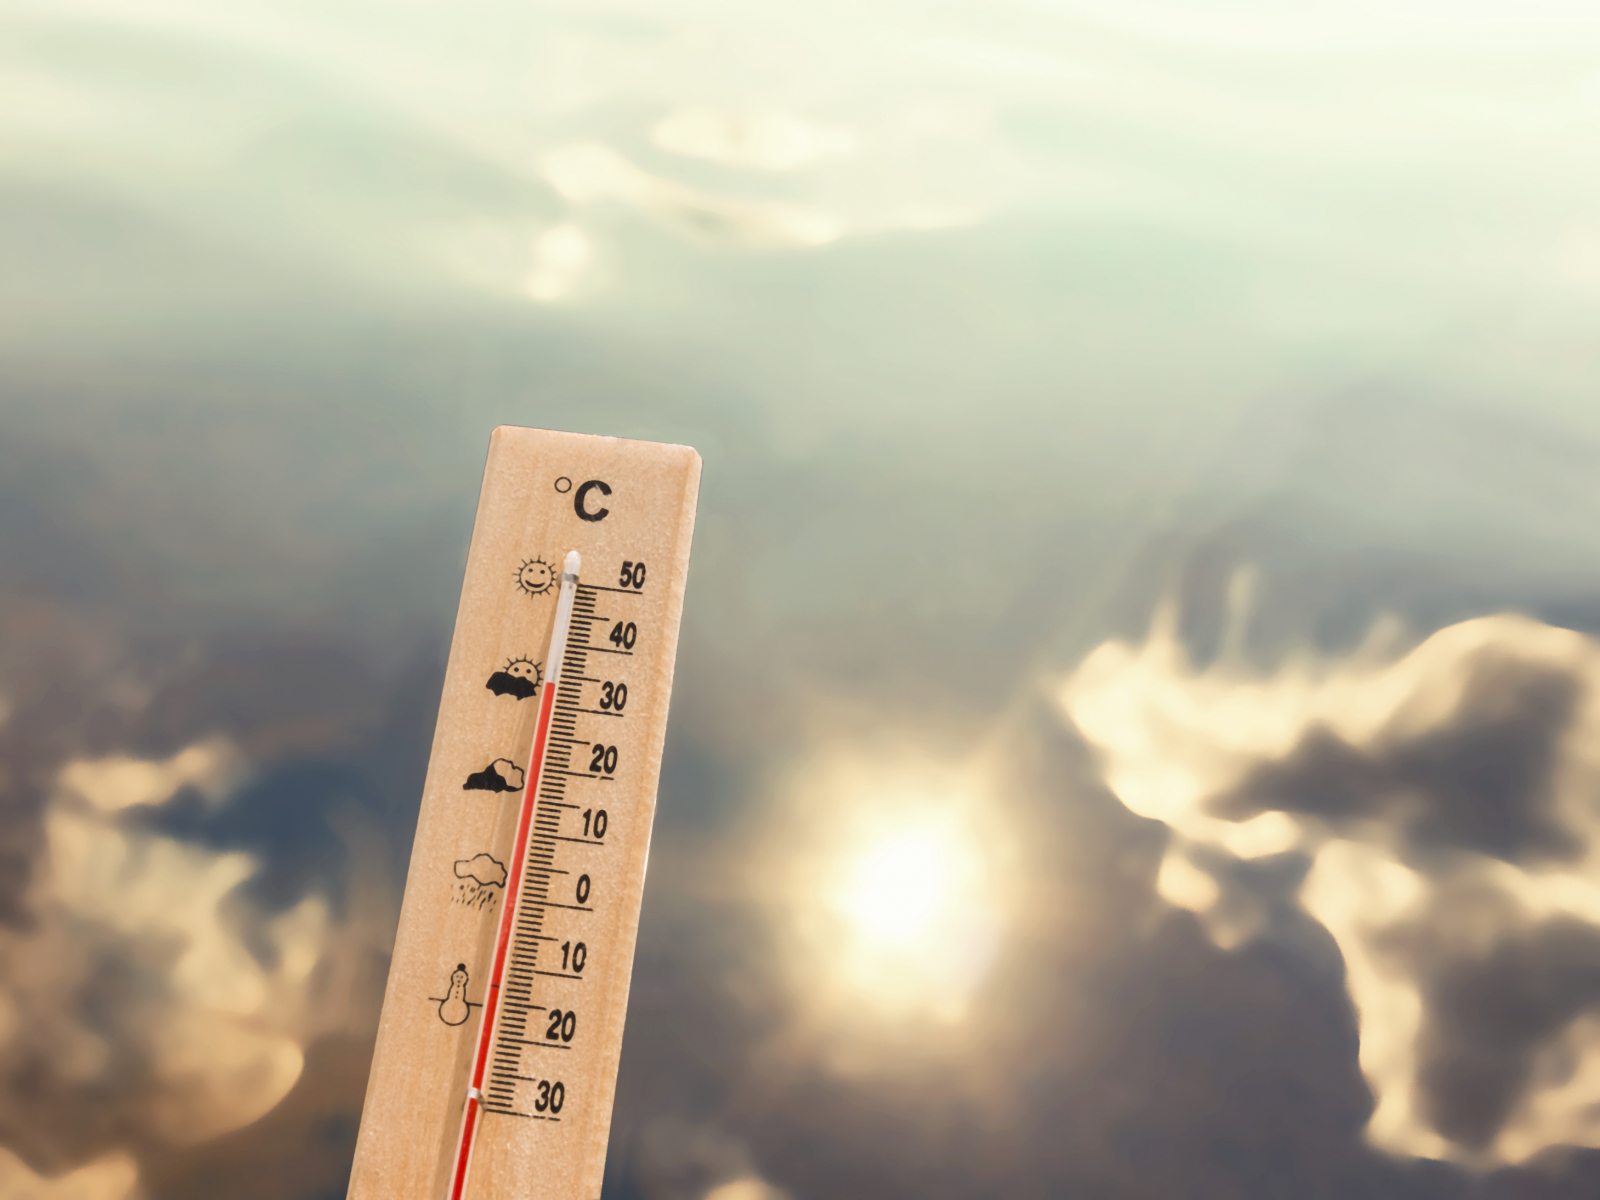 Termometer som viser 30 grader varme, med en sjøbakgrunn som refleterer sol og skyer.